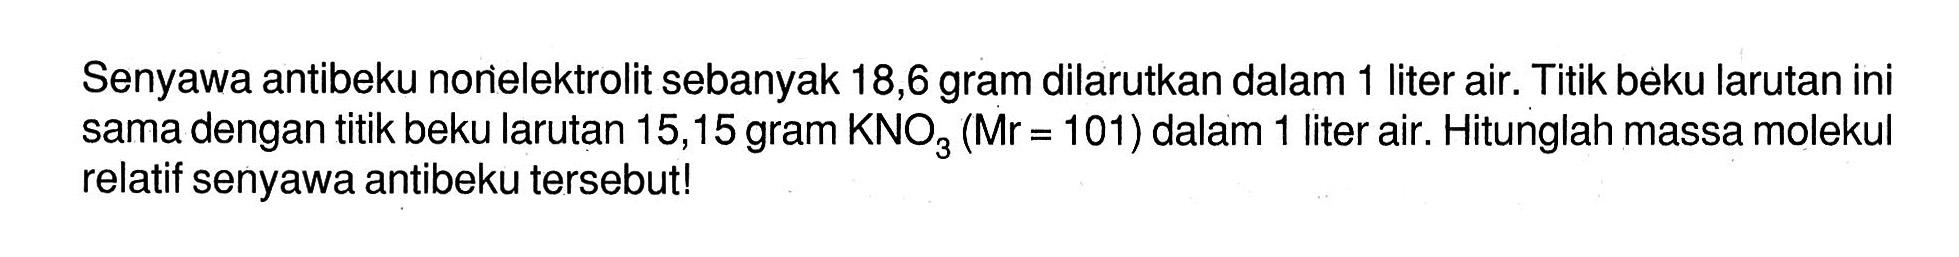 Senyawa antibeku norelektrolit sebanyak 18,6 gram dilarutkan dalam 1 liter air. Titik beku larutan ini sama dengan titik beku larutan 15,15 gram KNO3 (Mr = 101) dalam 1 liter air. Hitunglah massa molekul relatif senyawa antibeku tersebut!